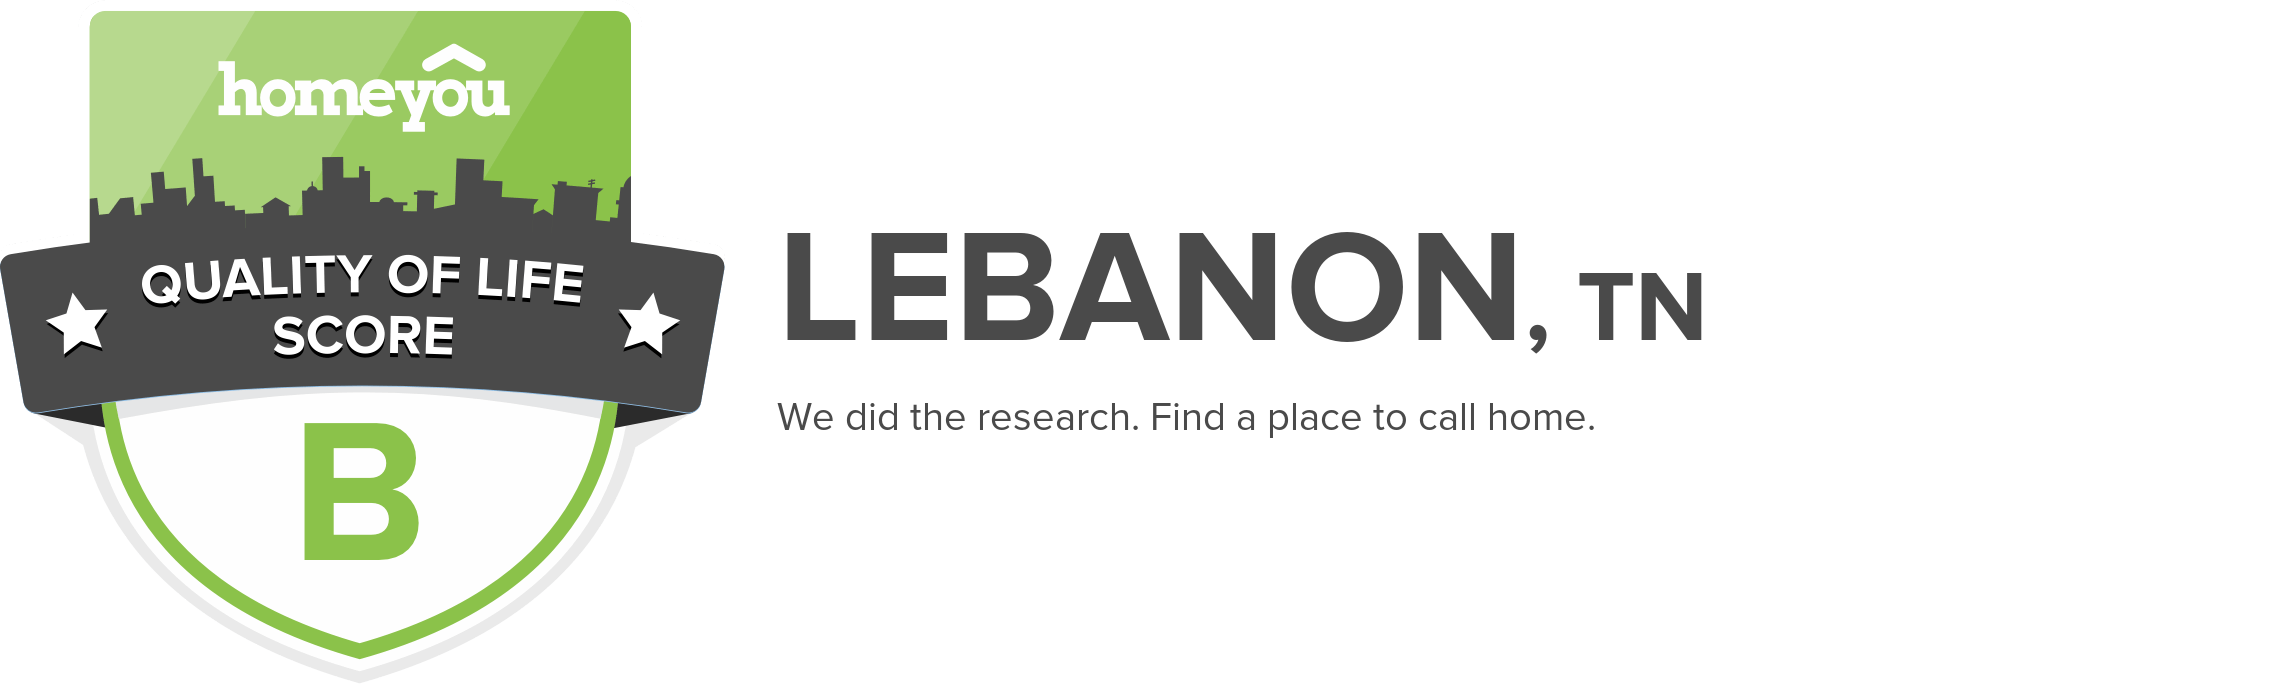 Lebanon, TN